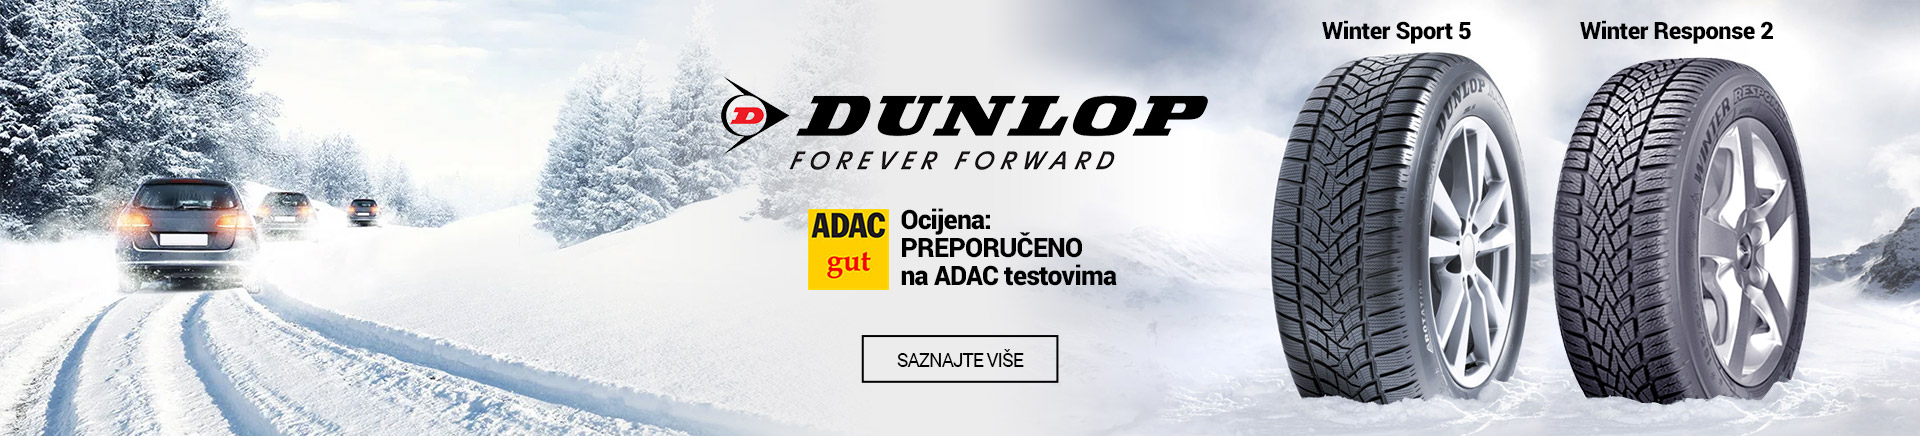 Dunlop Winter Response 2 i Winter Sport 5